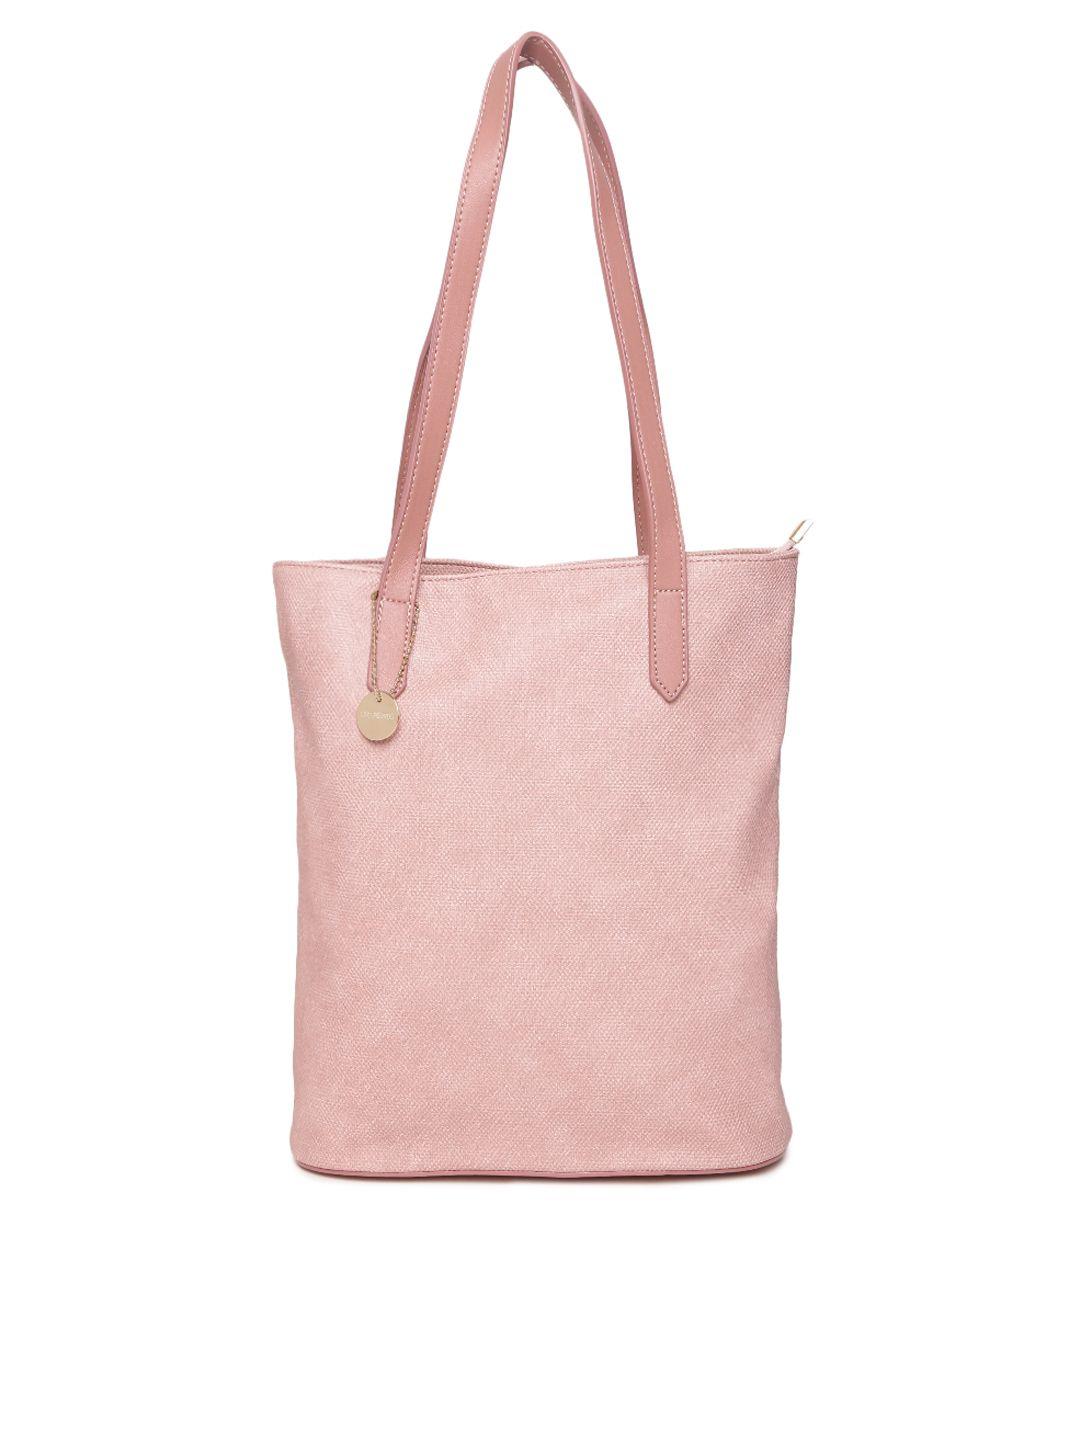 lisa hayden for lino perros pink shoulder bag